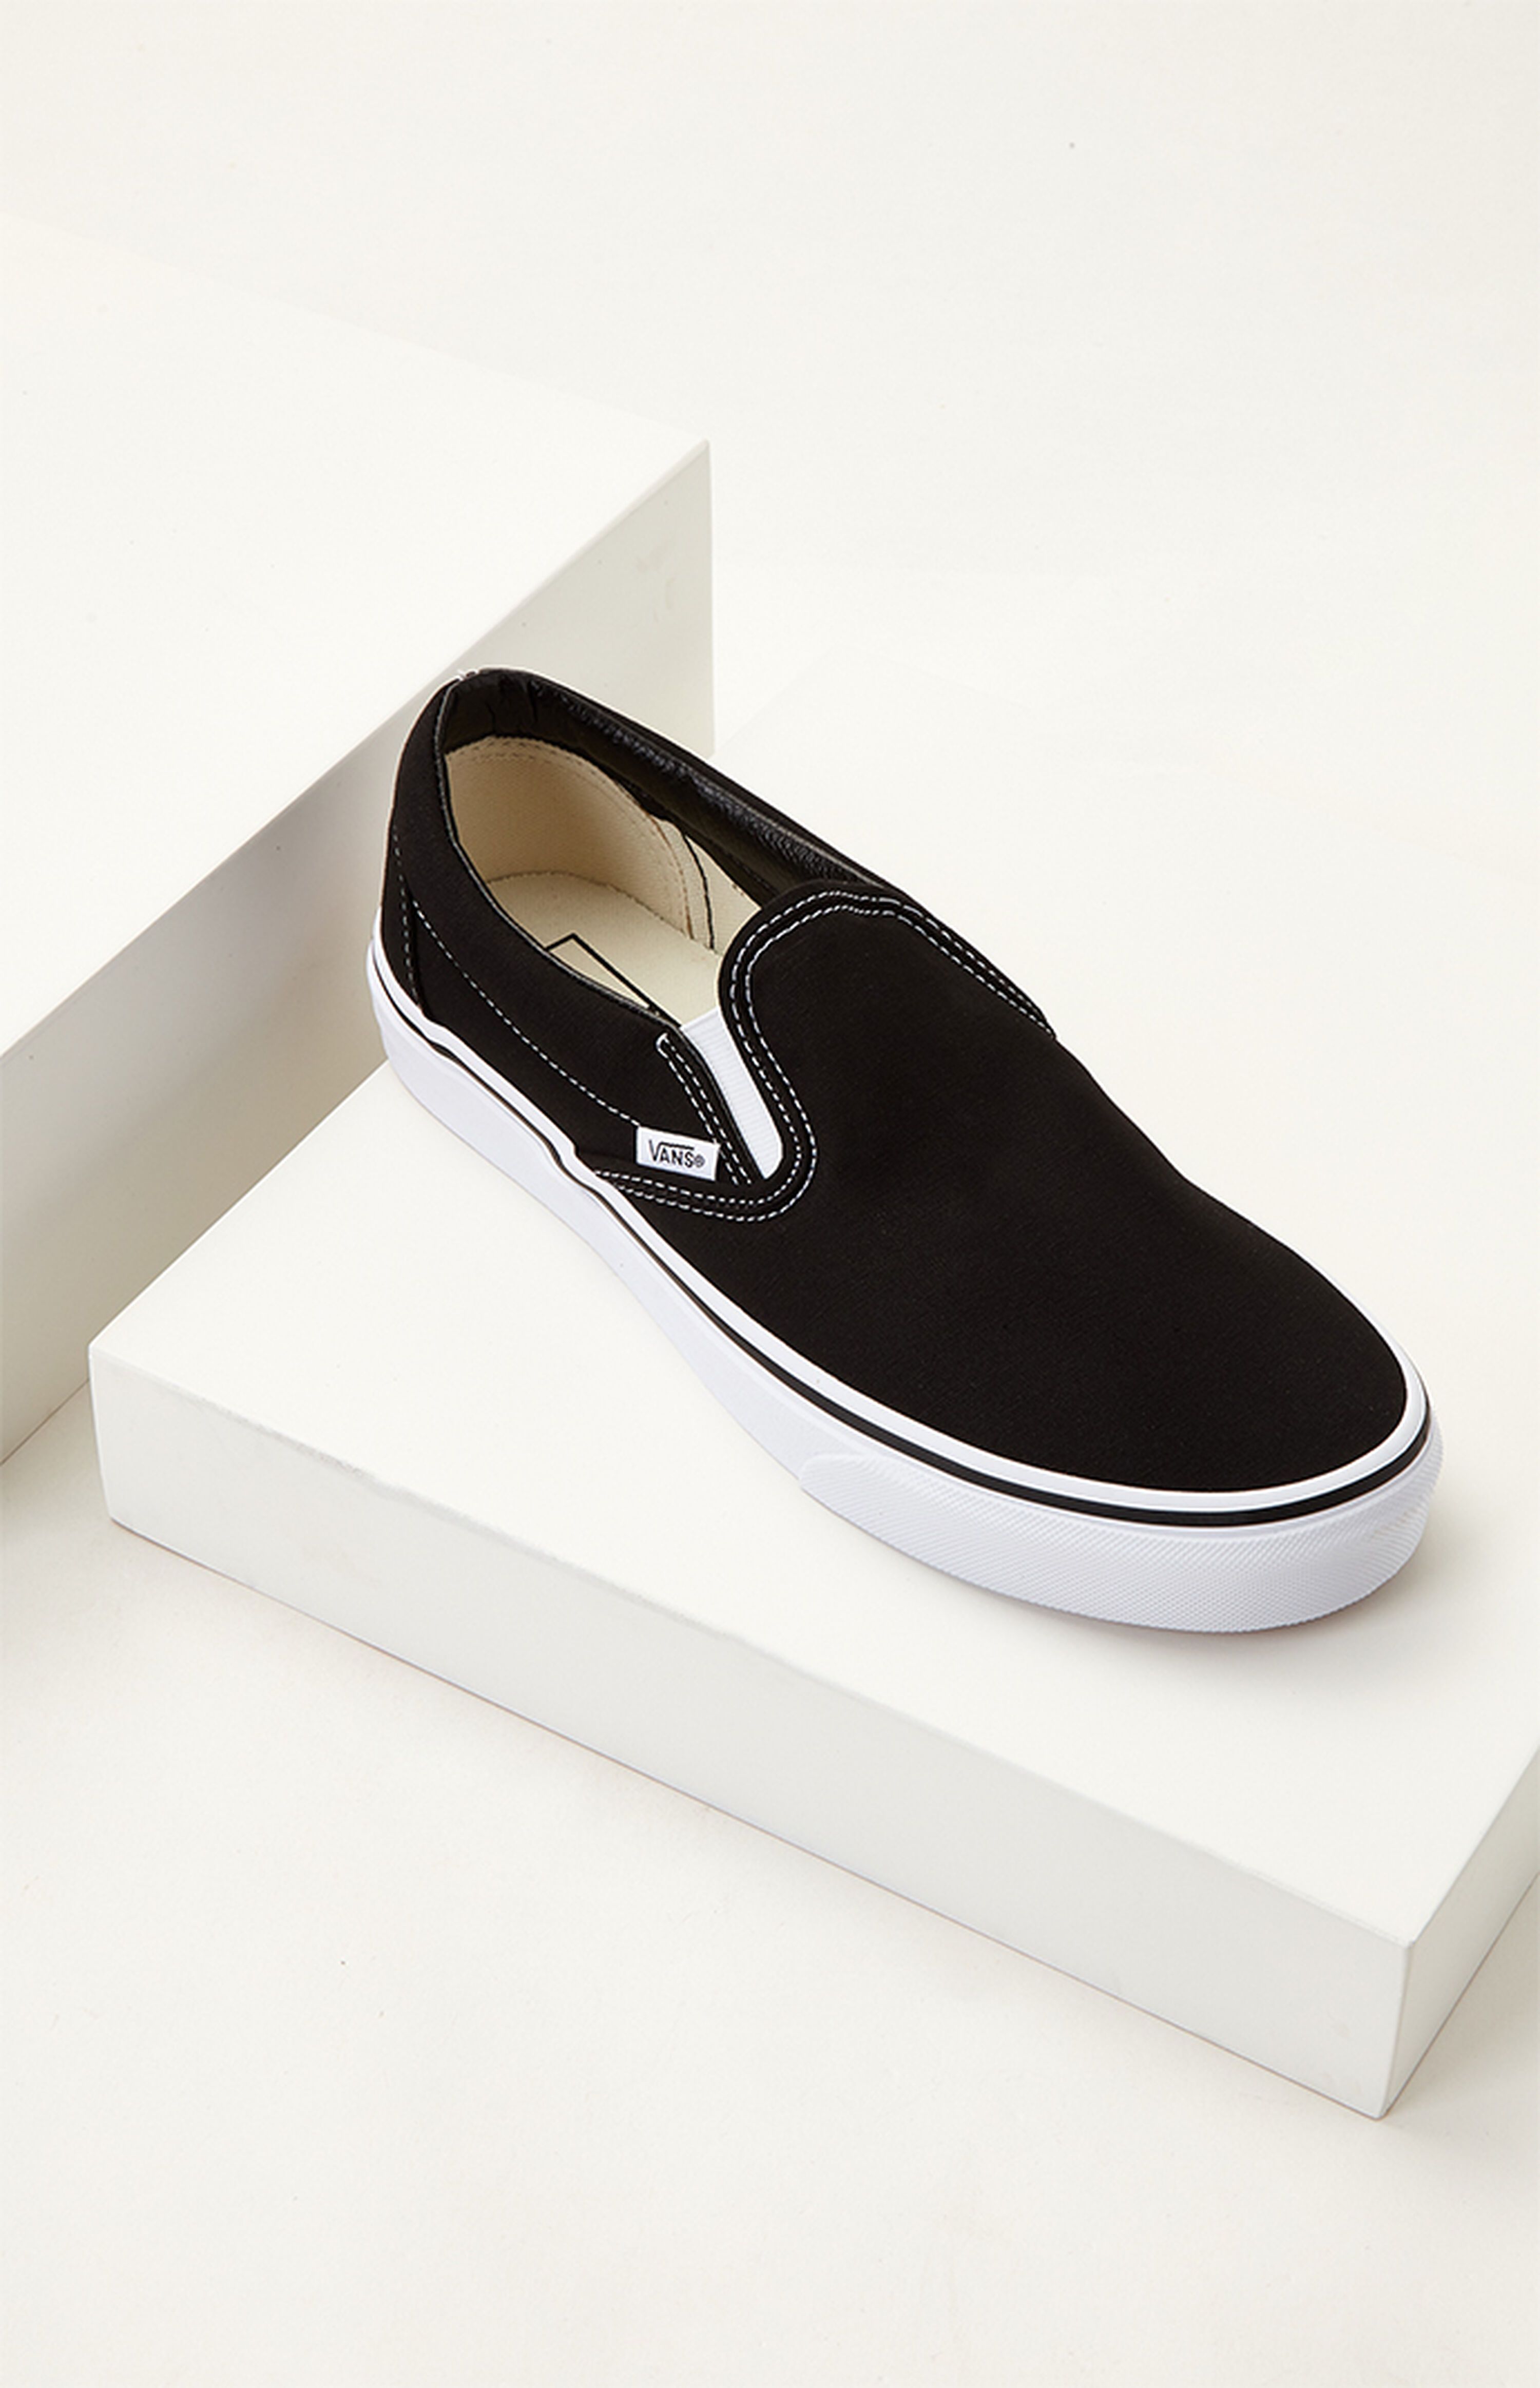 Vans Classic Slip-On Black Shoes | PacSun | PacSun